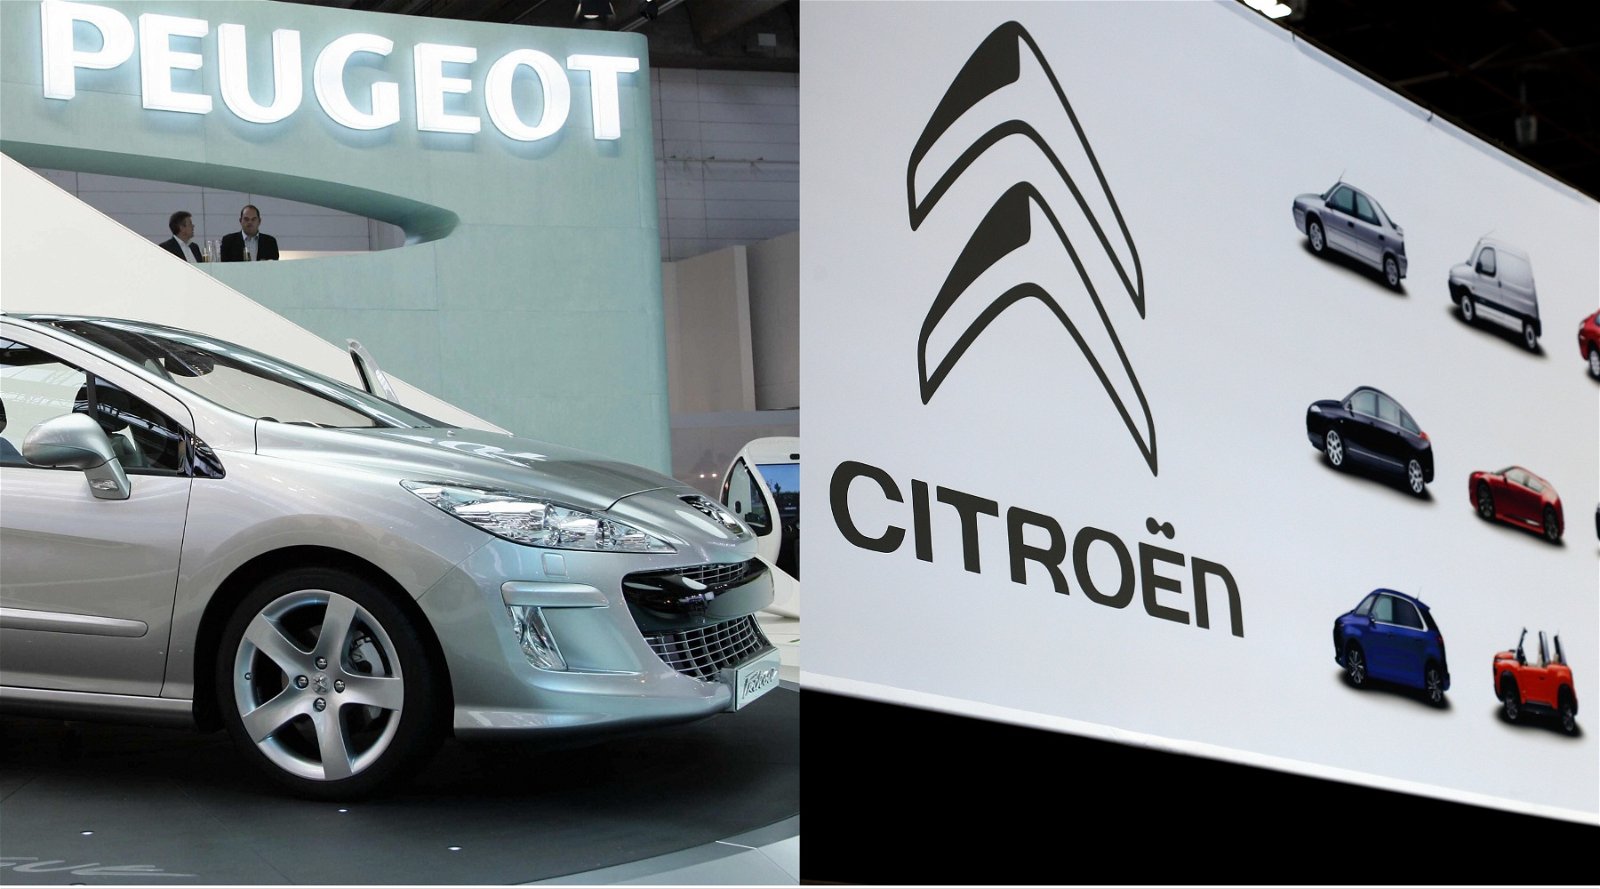 Автомобили Citroën и Peugeot скоро придут в негодность с сообщением об ошибке: «Ремонт стоил 1200 евро».